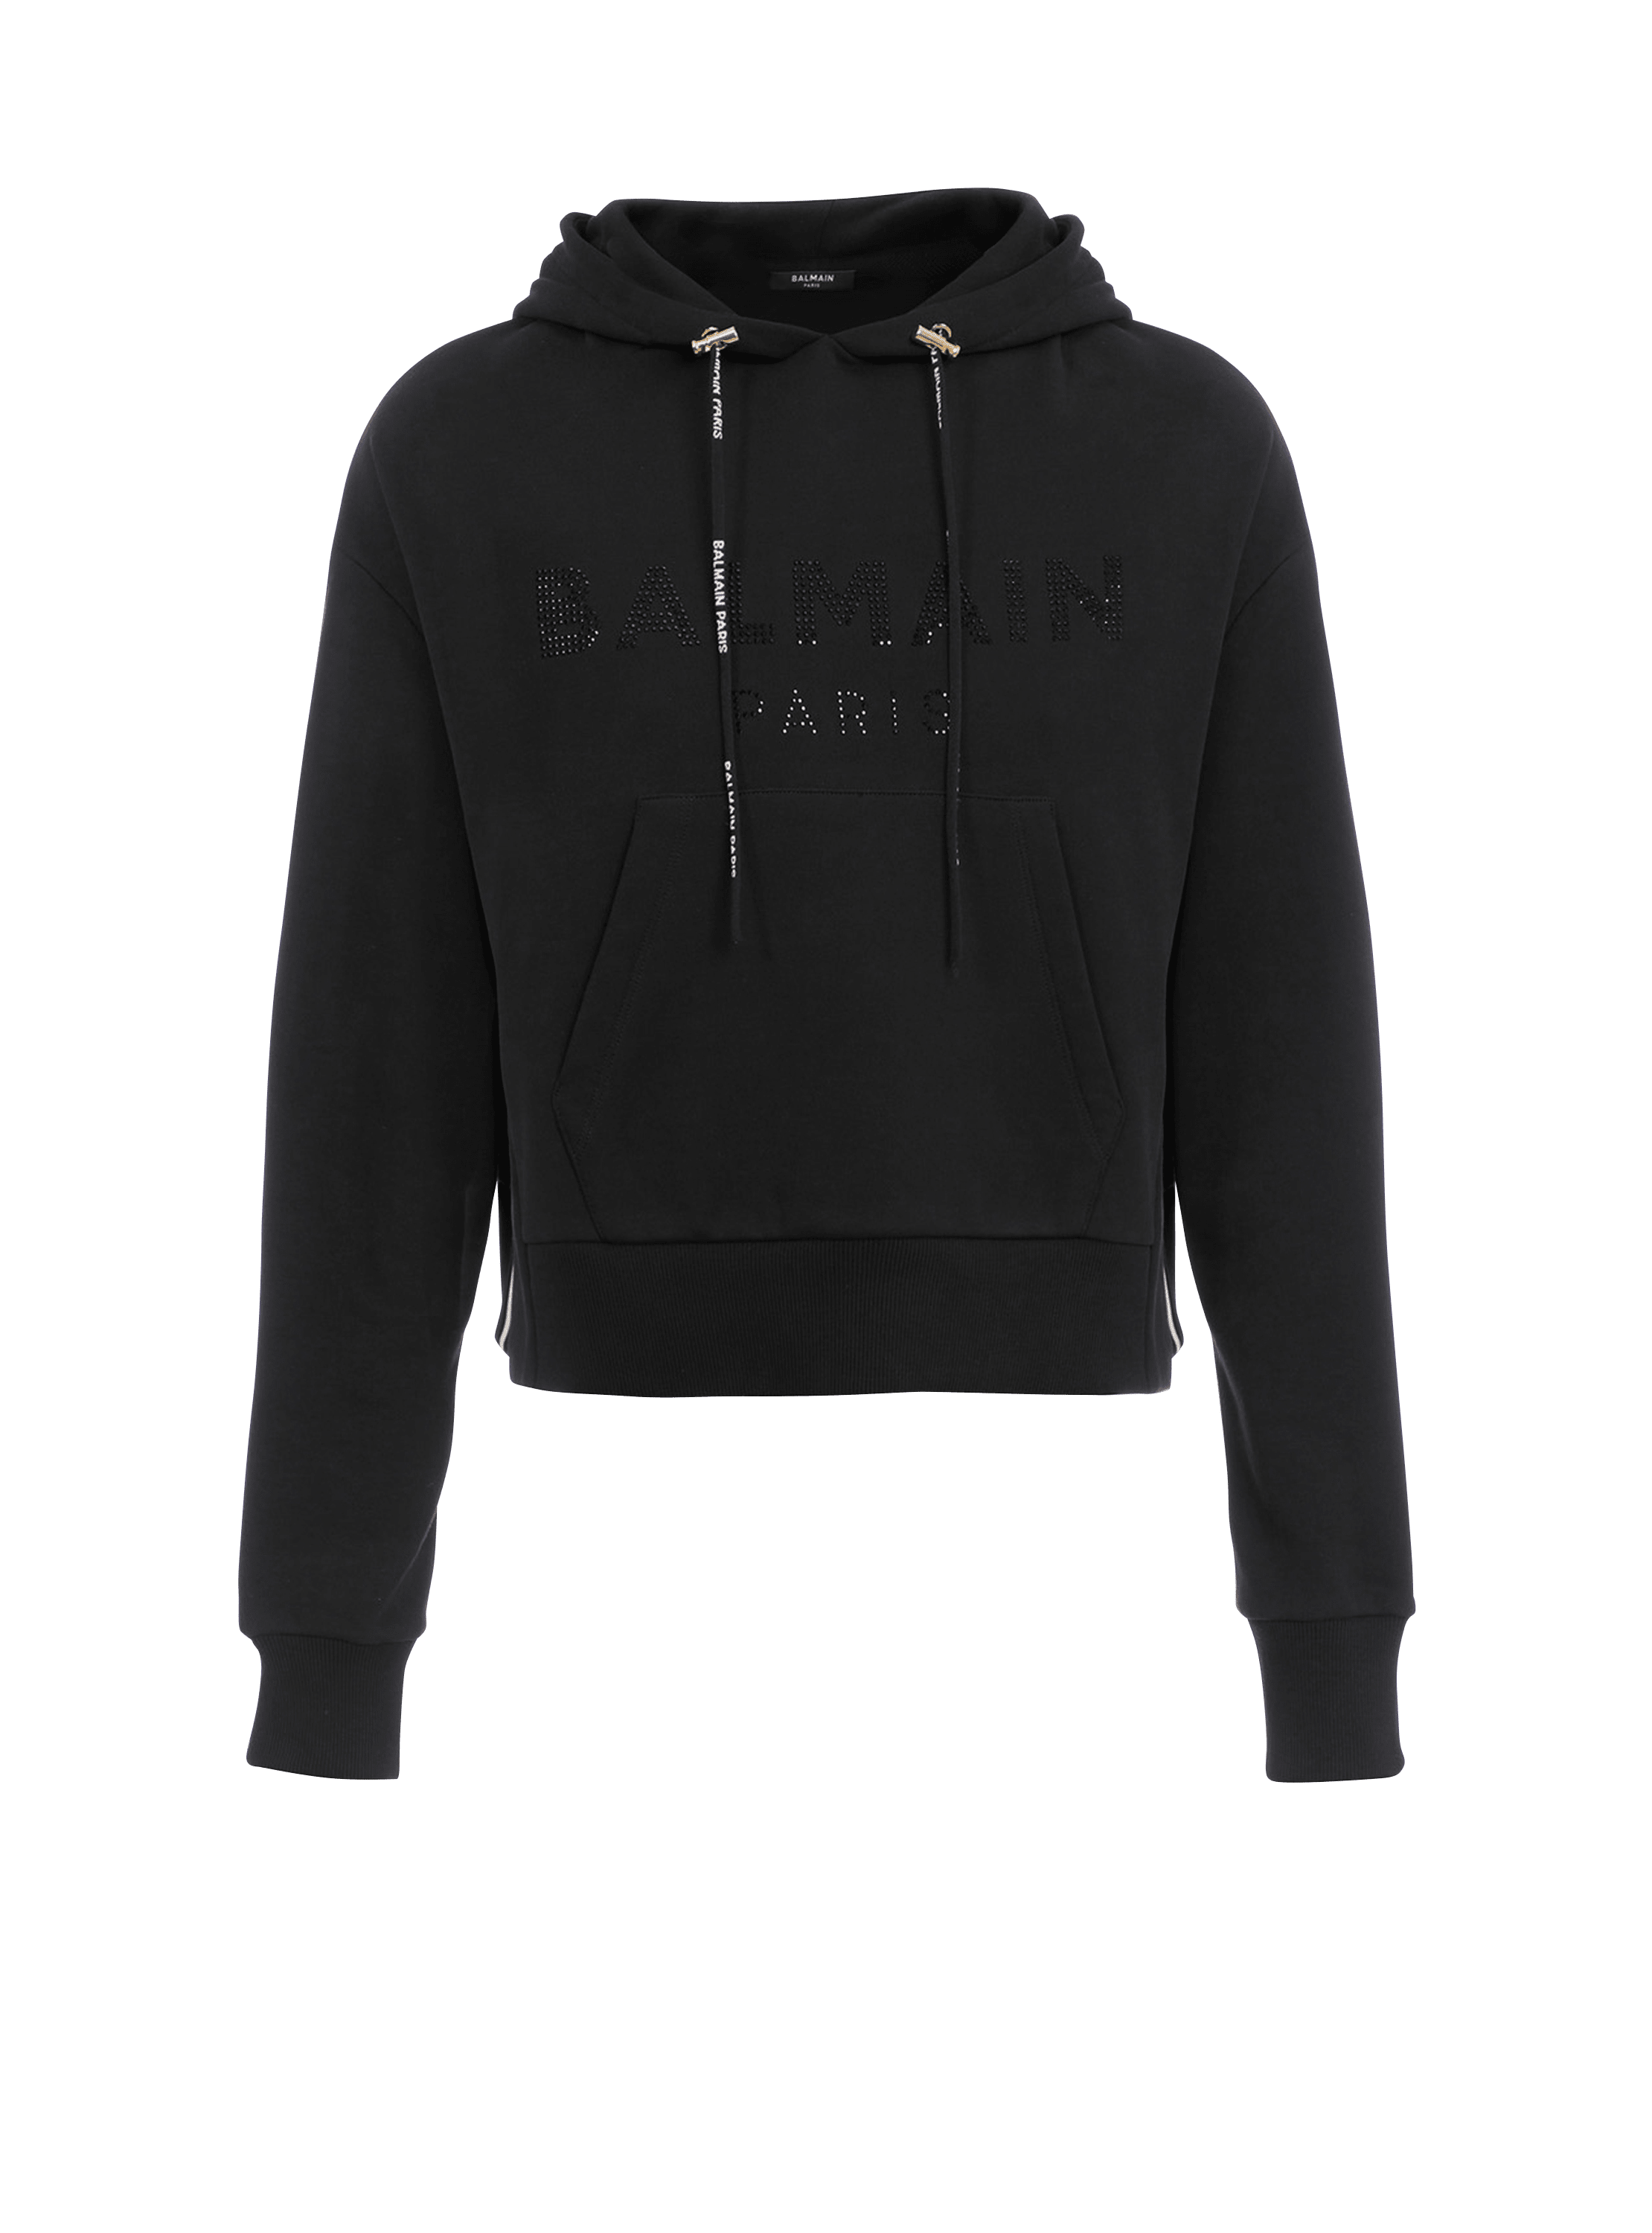 Cropped-Sweatshirt aus Bio-Baumwolle mit Balmain-Logo aus schwarzen Strasssteinen, schwarz, hi-res